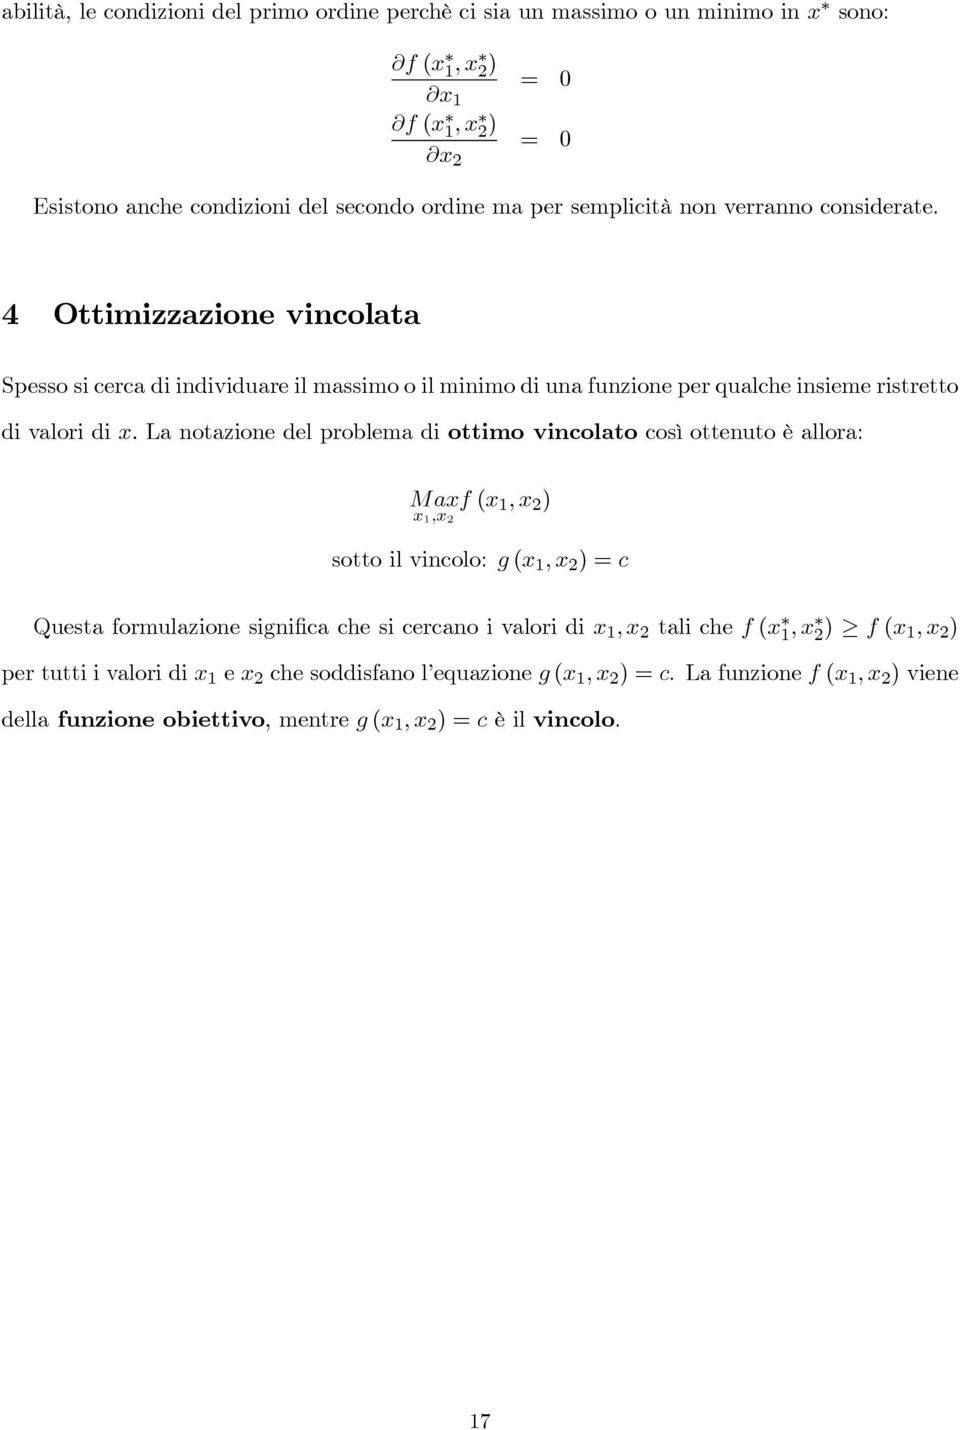 La notazione del problema di ottimo vincolato così ottenuto è allora: Ma 1, 2 f ( 1, 2 ) sotto il vincolo: g ( 1, 2 )c Questa formulazione significa che si cercano i valori di 1,